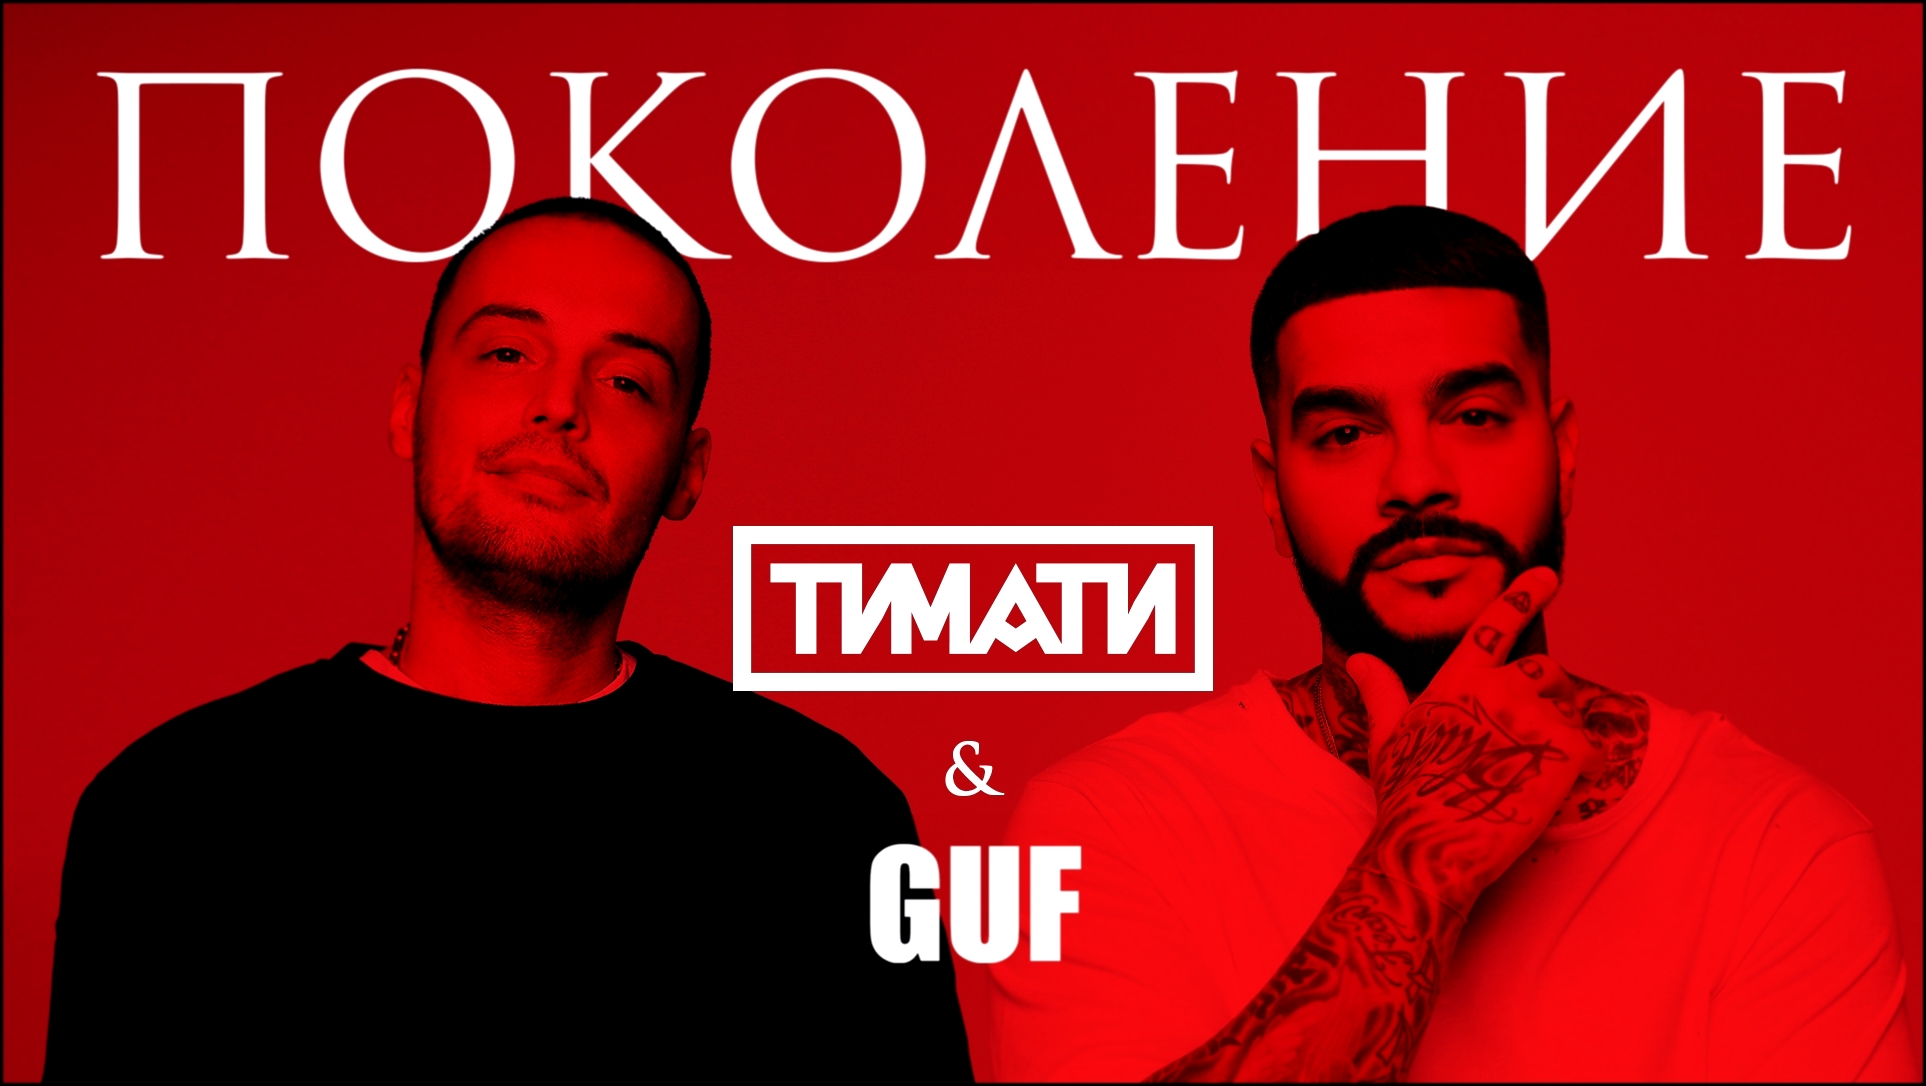 Тимати feat. GUF - Поколение (премьера трека, 2017) - видеоклип на песню